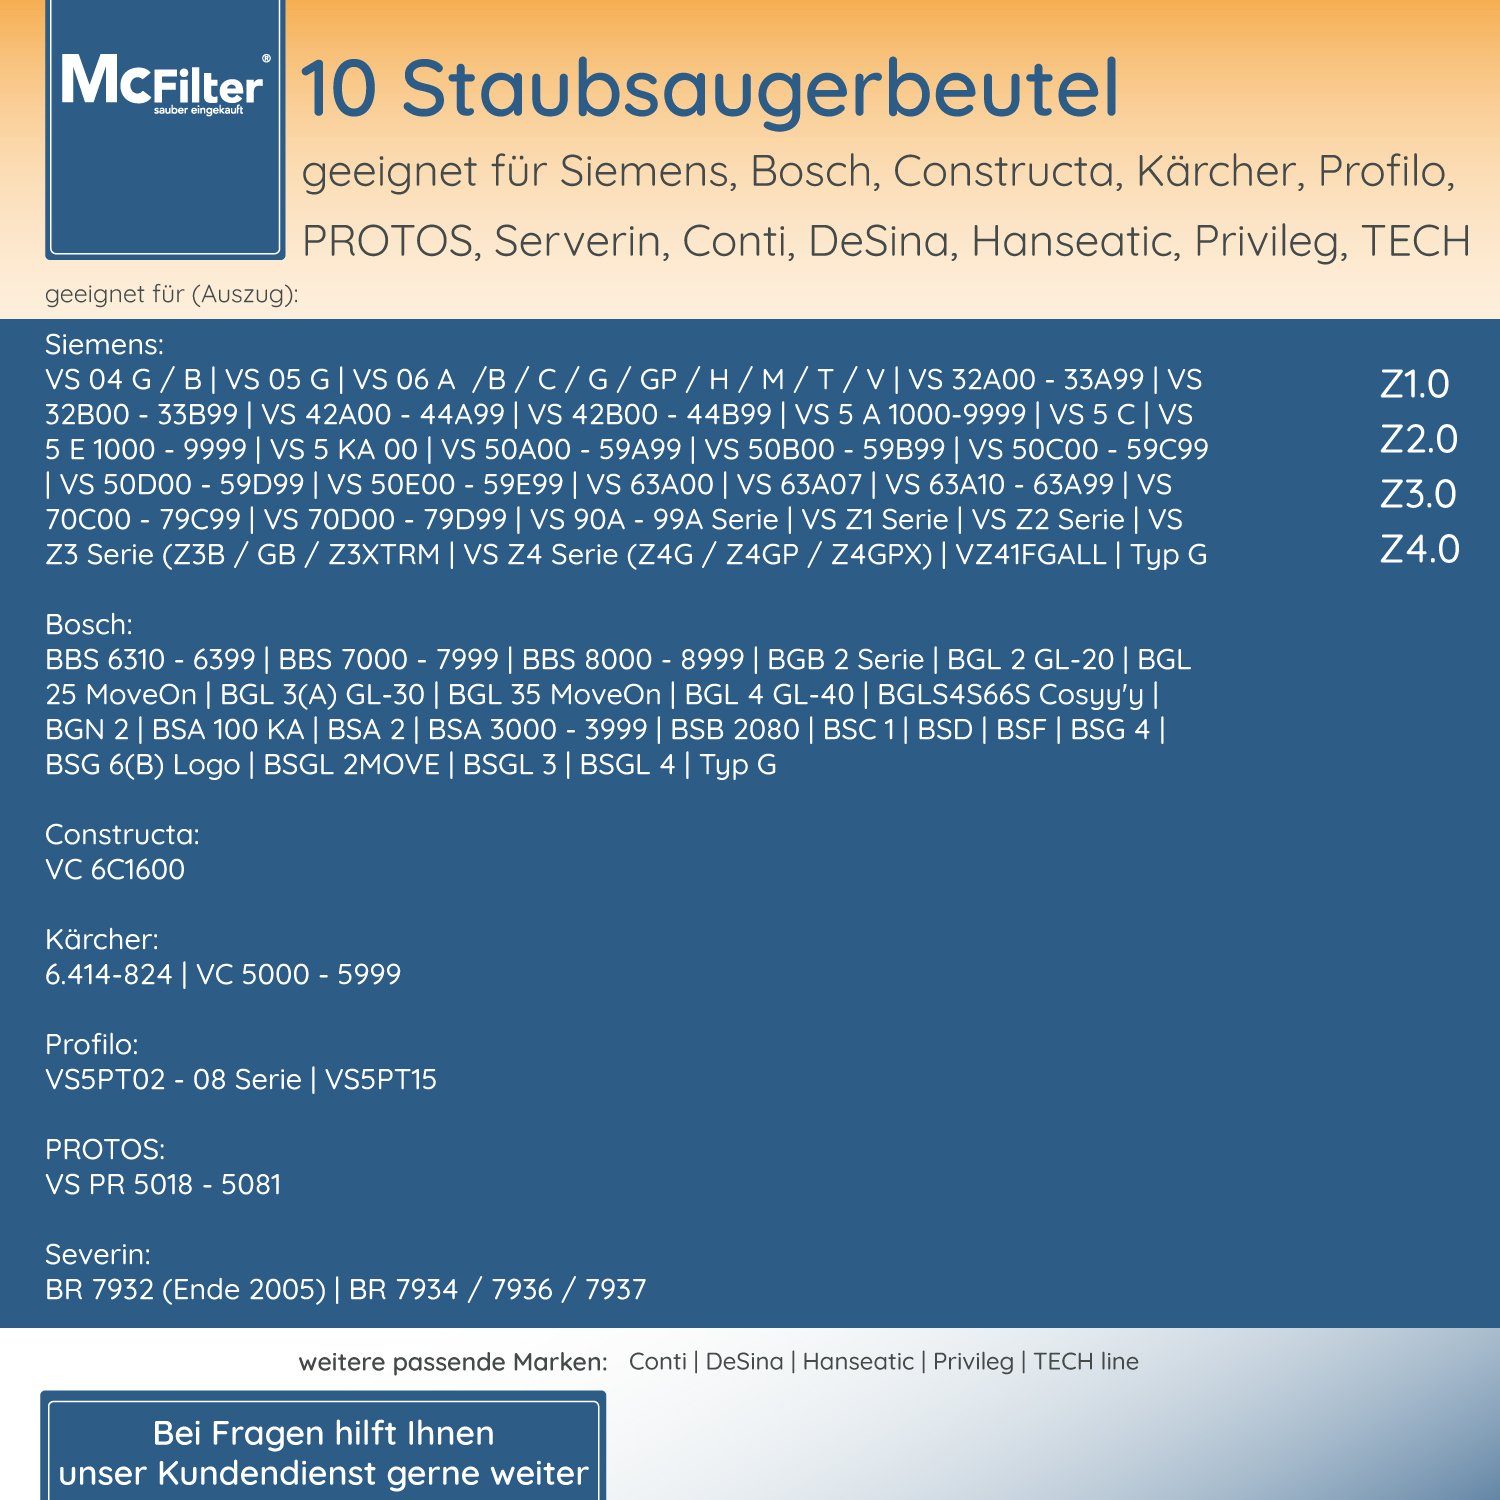 VSP3AAAA Siemens St., inkl. für Staubbeutel Edition Filter Plus 20 Limited Staubsaugerbeutel, McFilter passend iQ300 Hygieneverschluss, 5-lagiger Staubsauger, mit